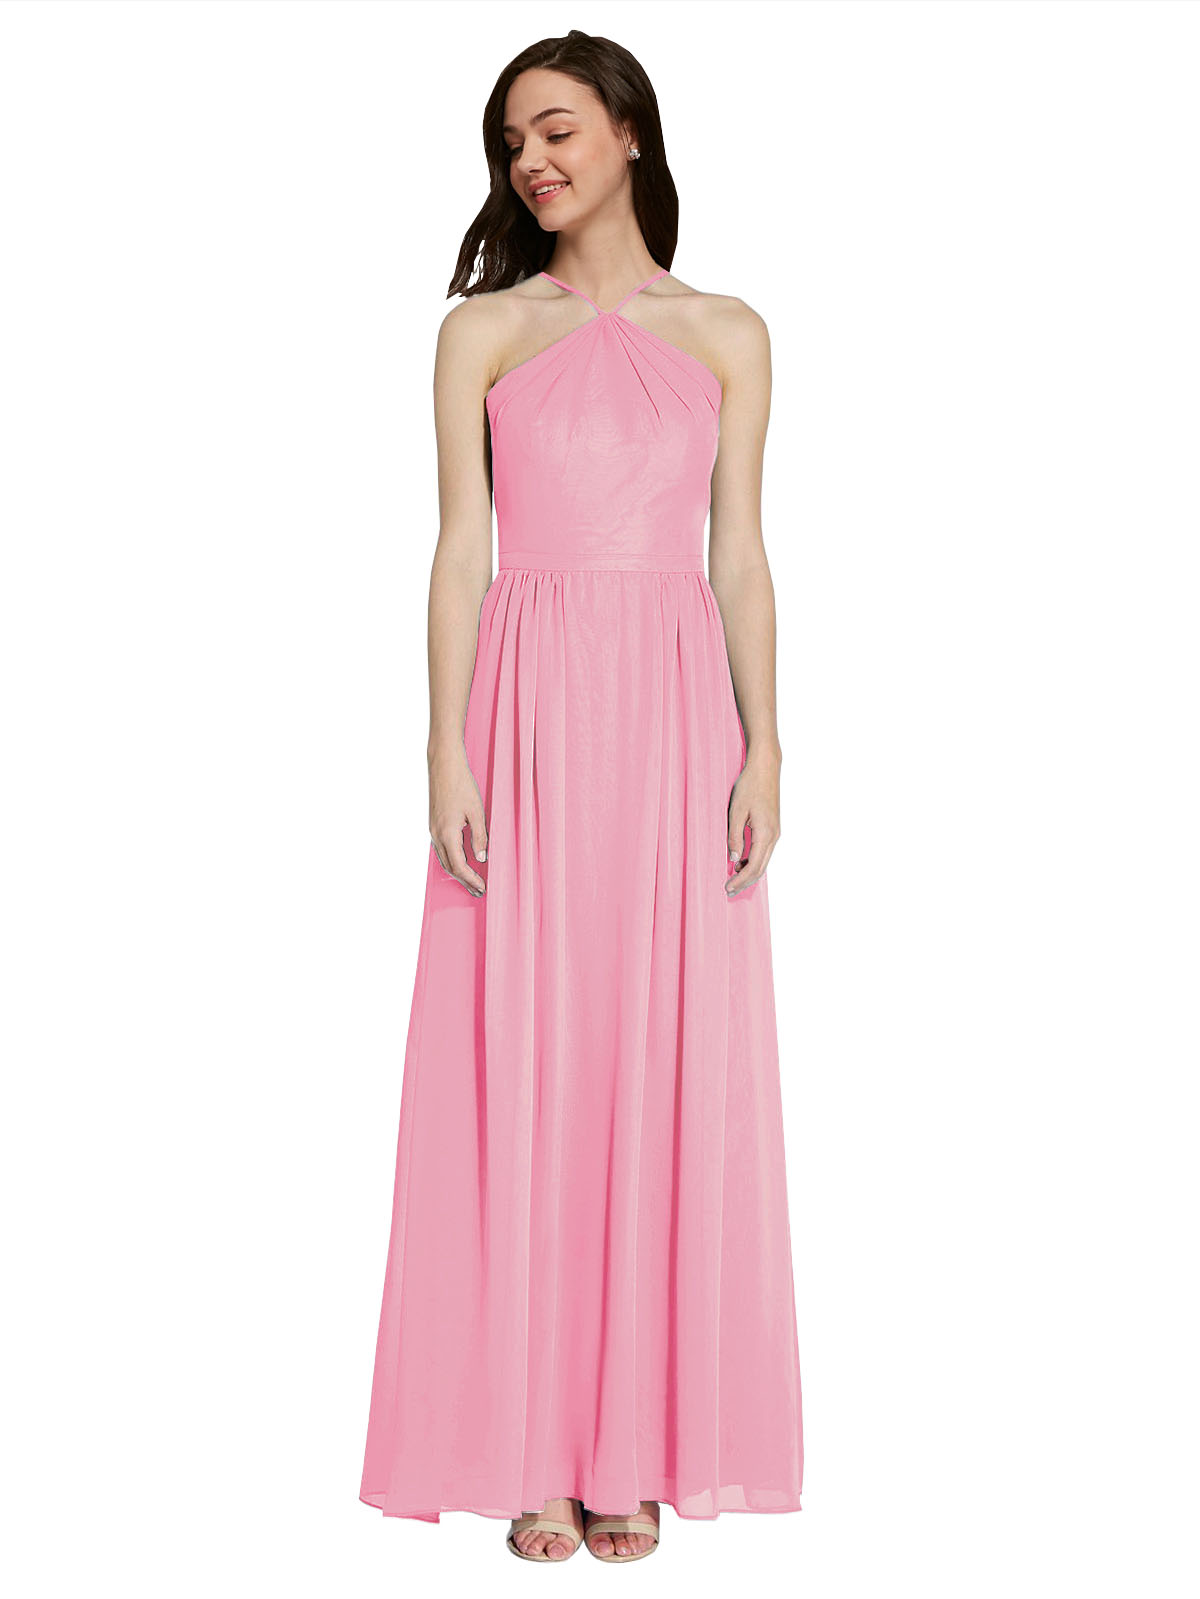 Long A-Line Halter Sleeveless Hot Pink Chiffon Bridesmaid Dress Raya